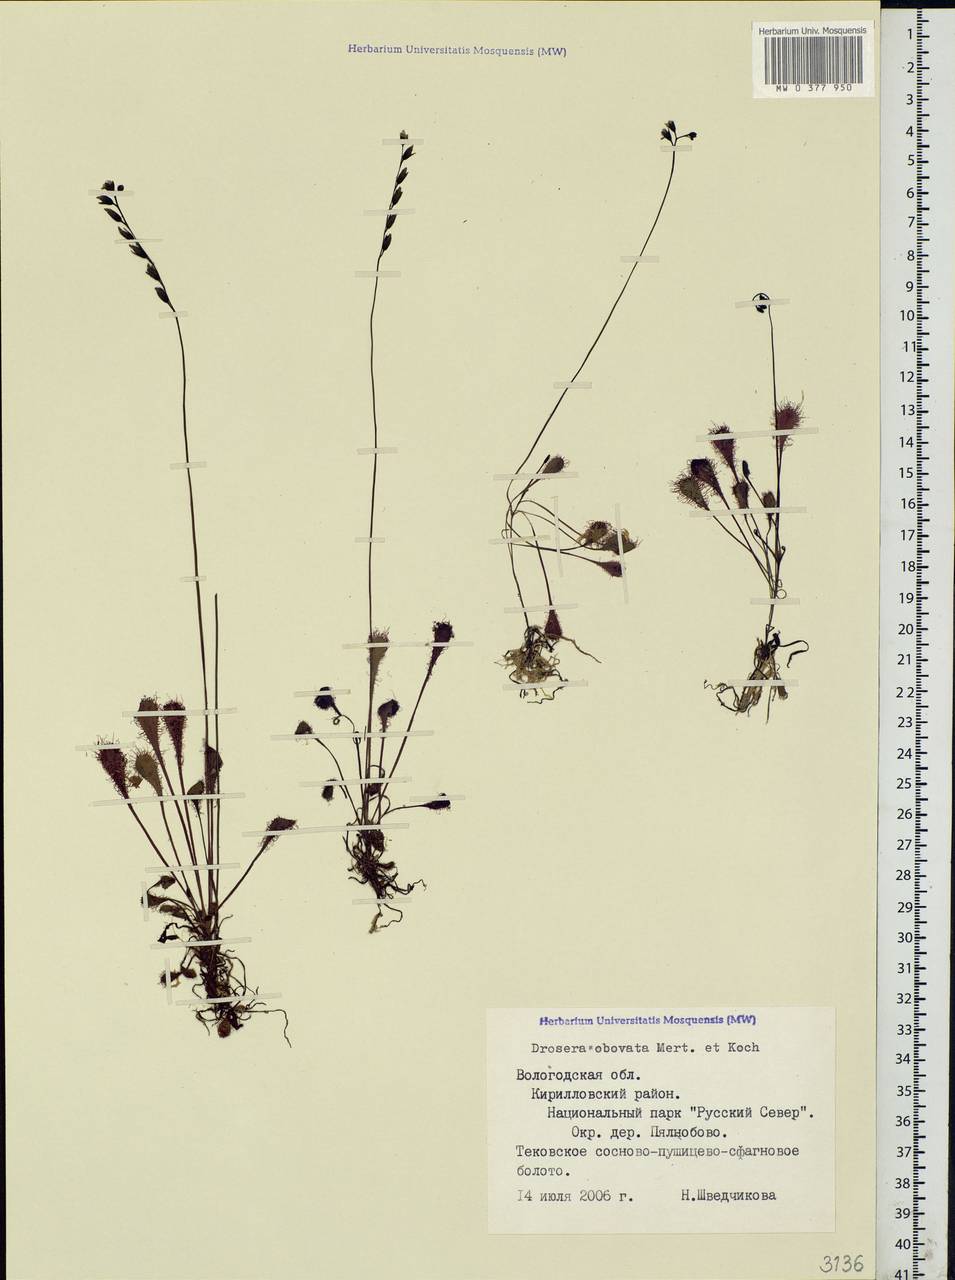 Drosera ×obovata Mert. & W. D. J. Koch, Восточная Европа, Северный район (E1) (Россия)